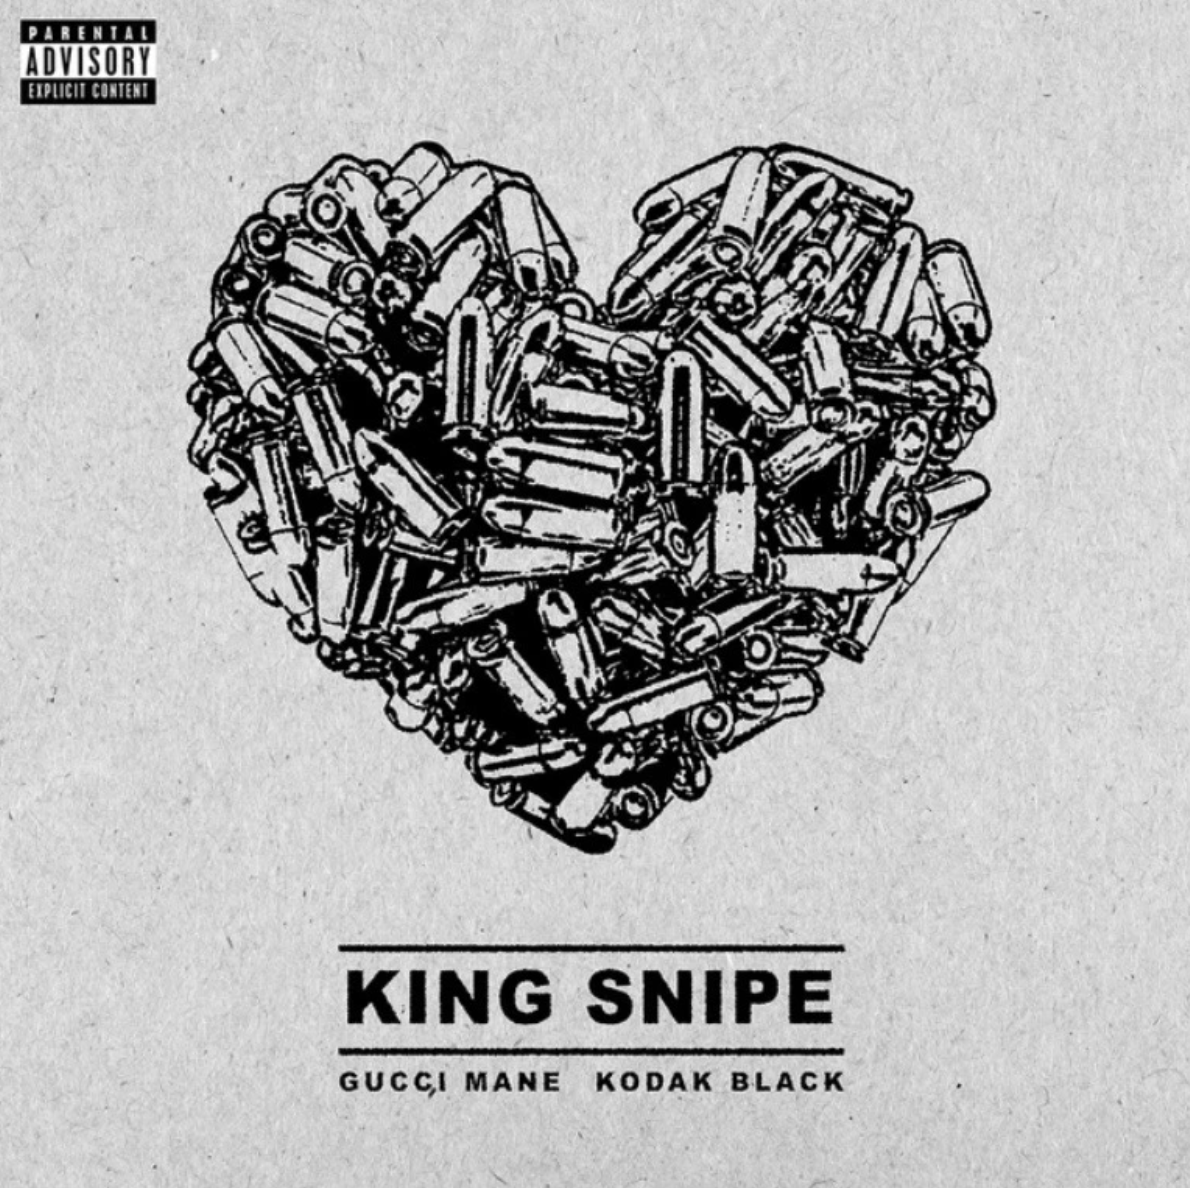 Gucci Mane & Kodak Black Link Up For “King Snipe”